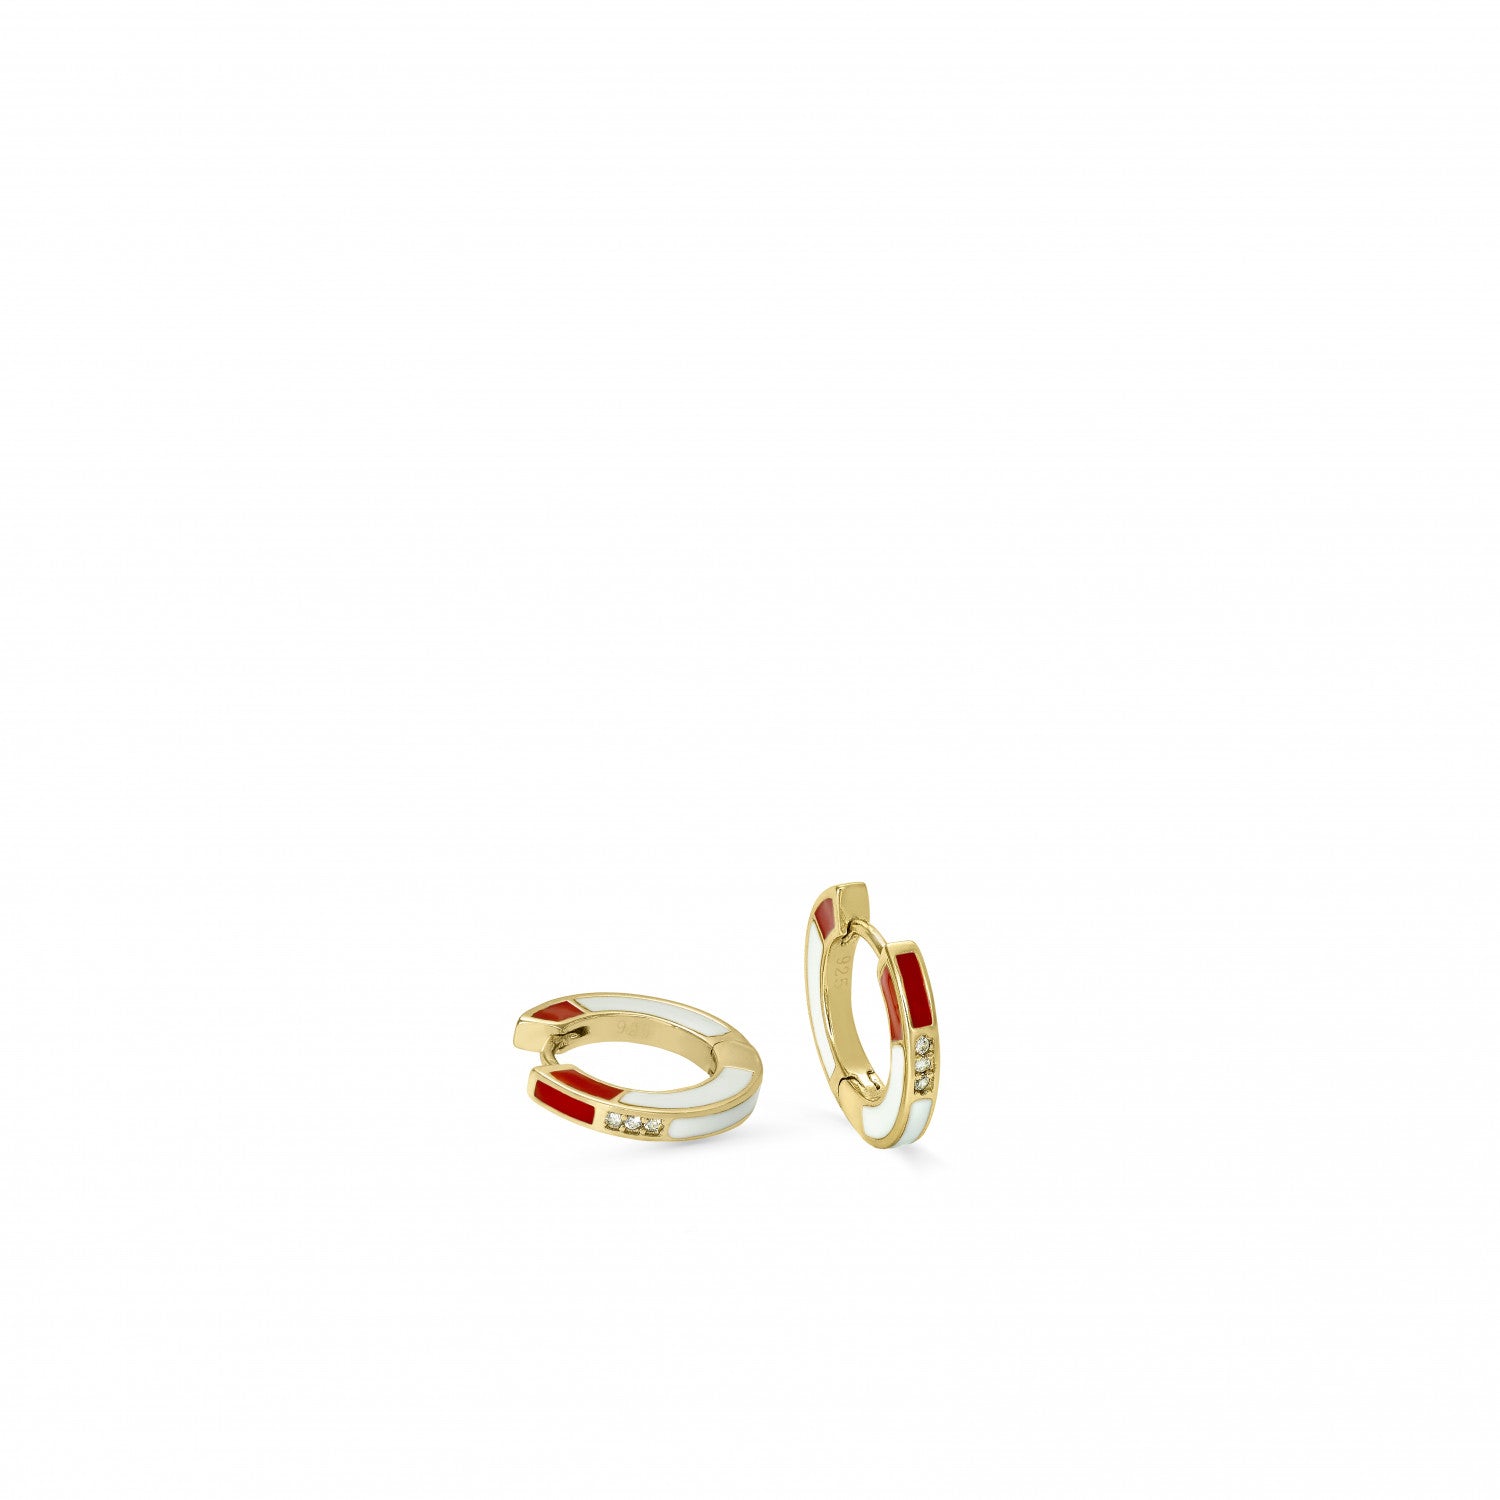 Pendiente · Pendientes aros pequeños diseño esmalte rojo y blanco con circonitas